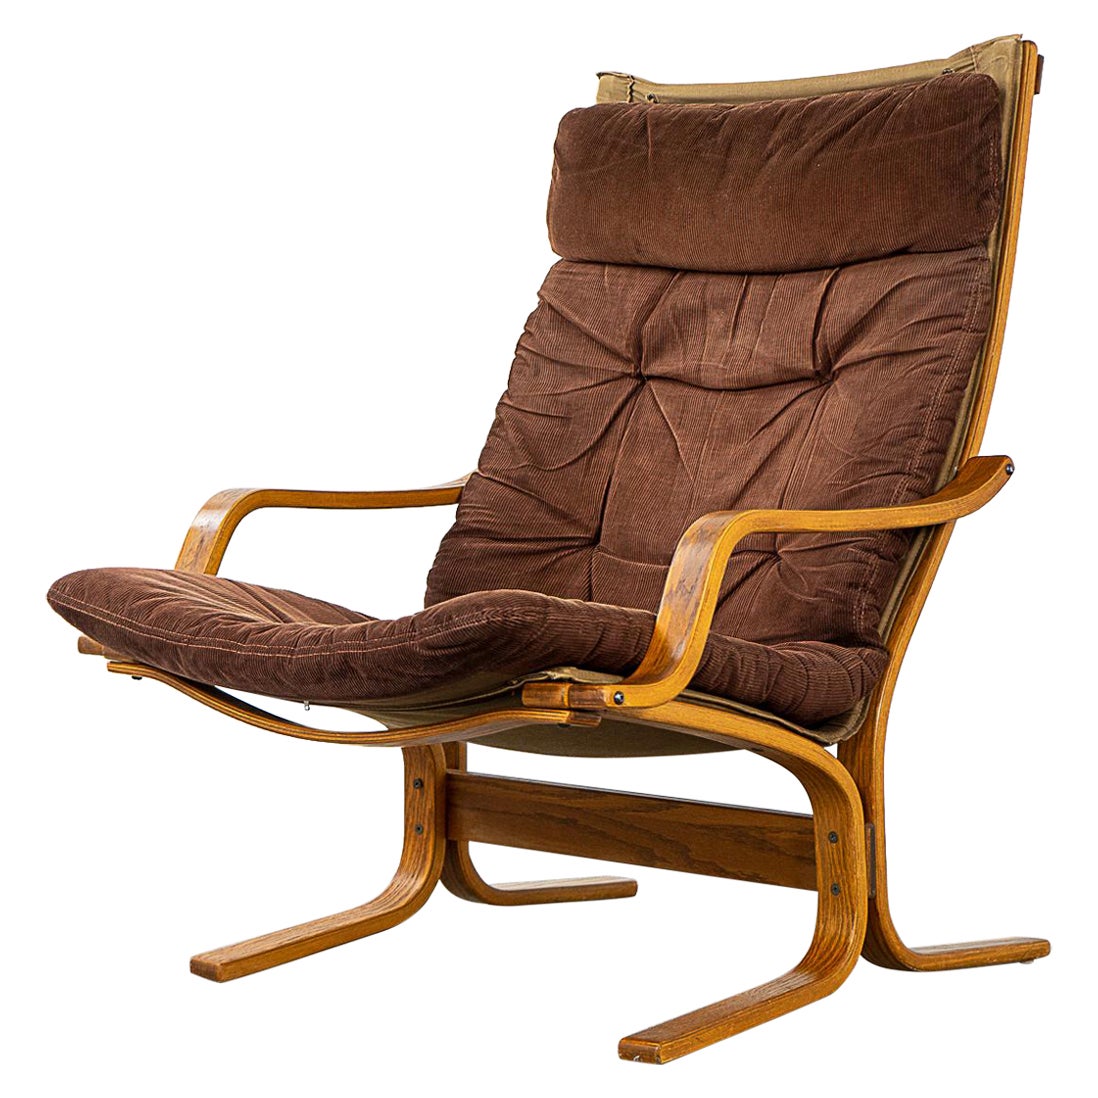 Norwegian "Siesta" Lounge Chair by Ingmar Relling